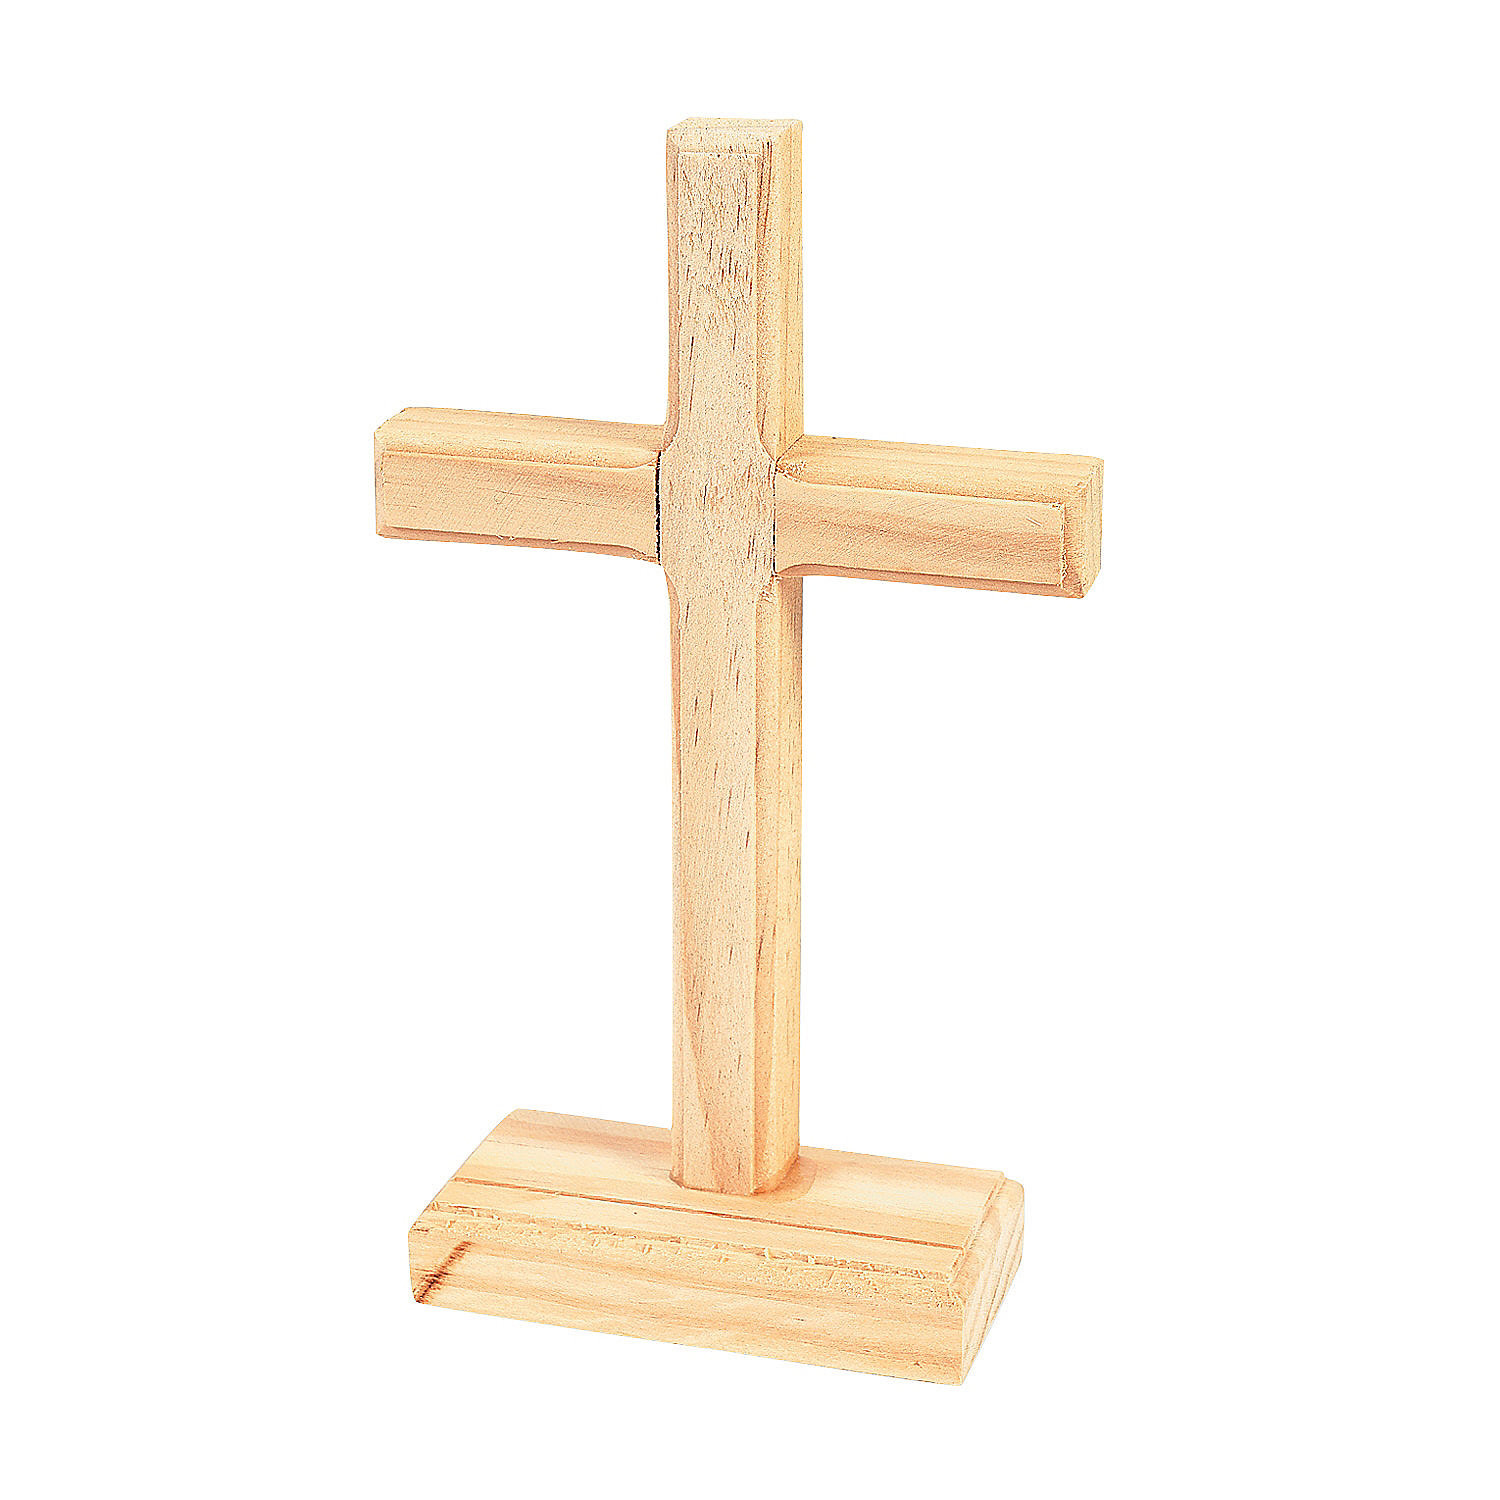 DIY Wood Crosses
 DIY Wood Crosses